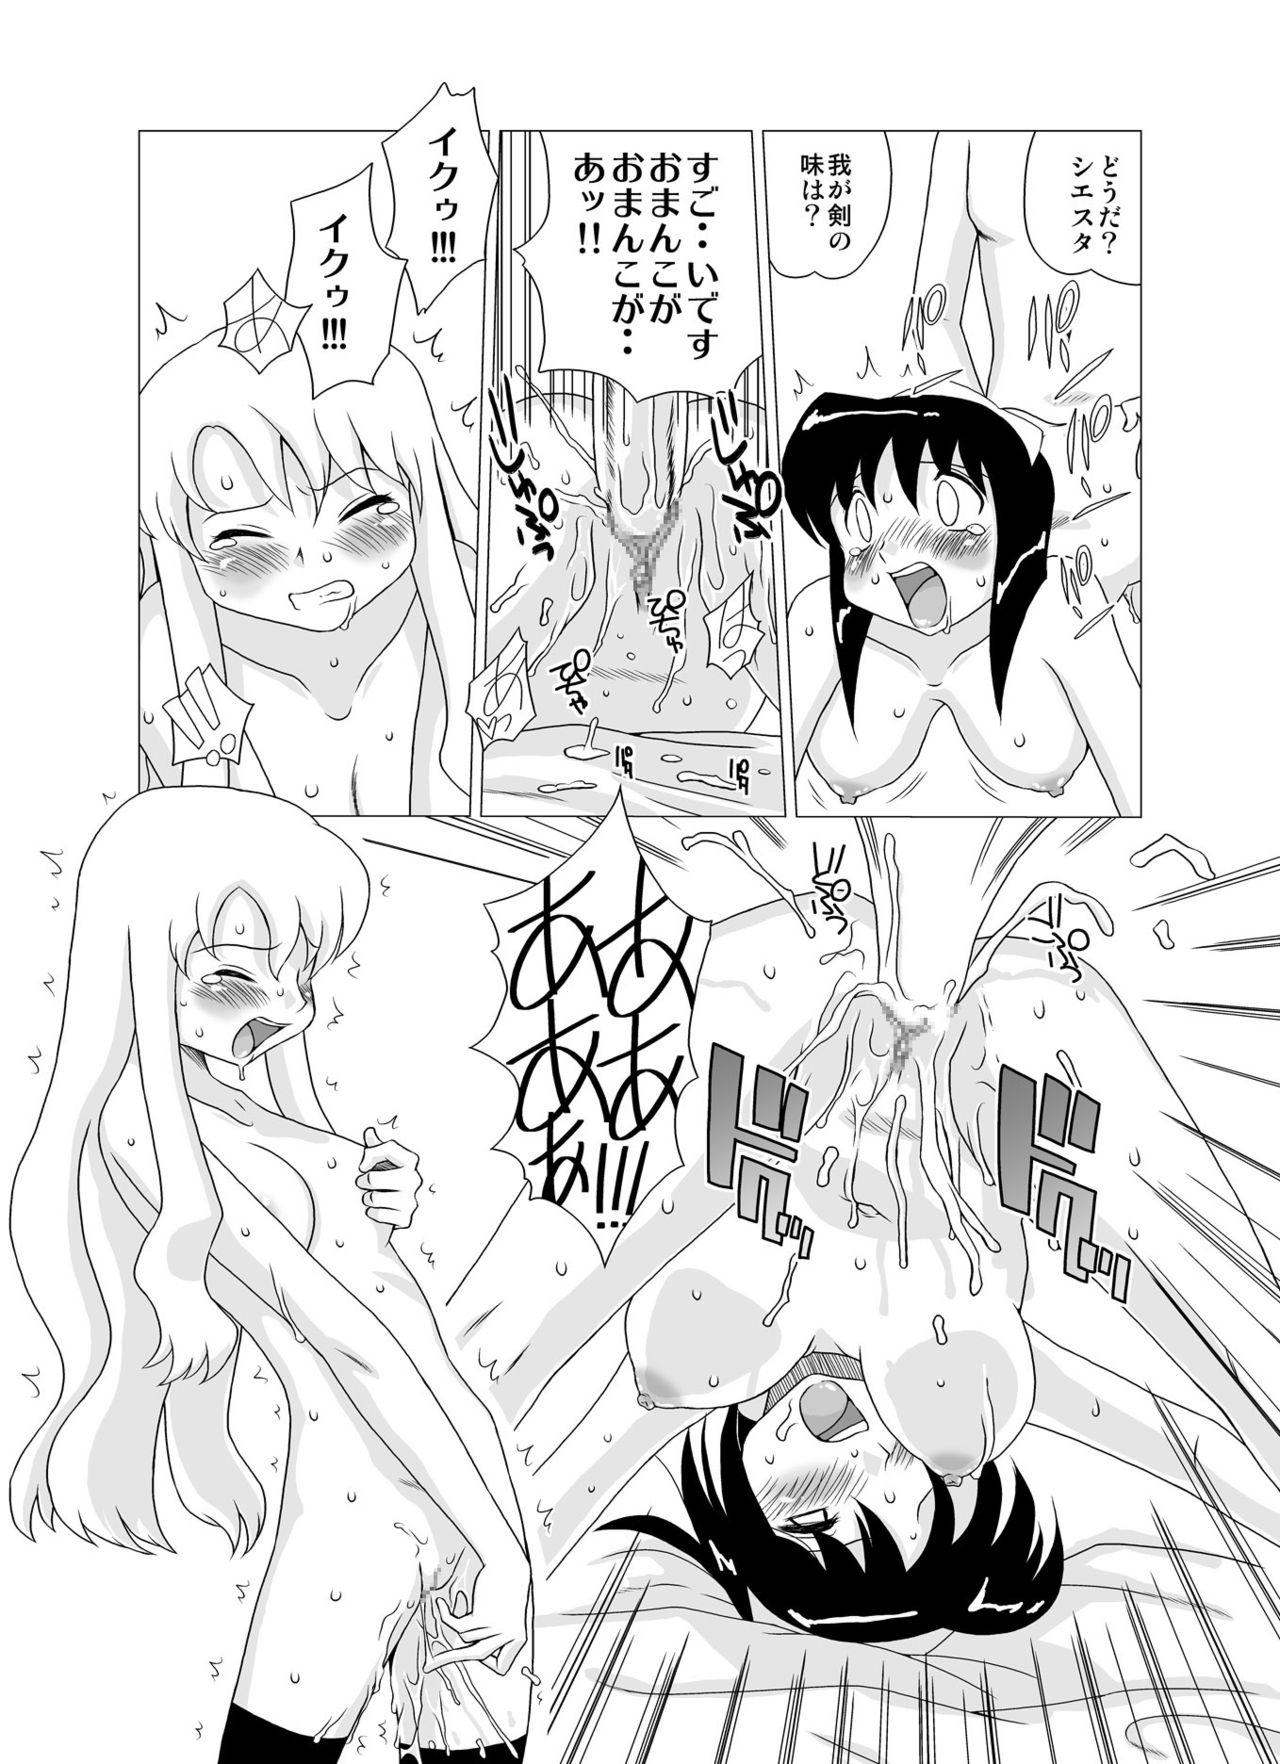 Candid Zero no Tsukai Mara - Zero no tsukaima Freaky - Page 8